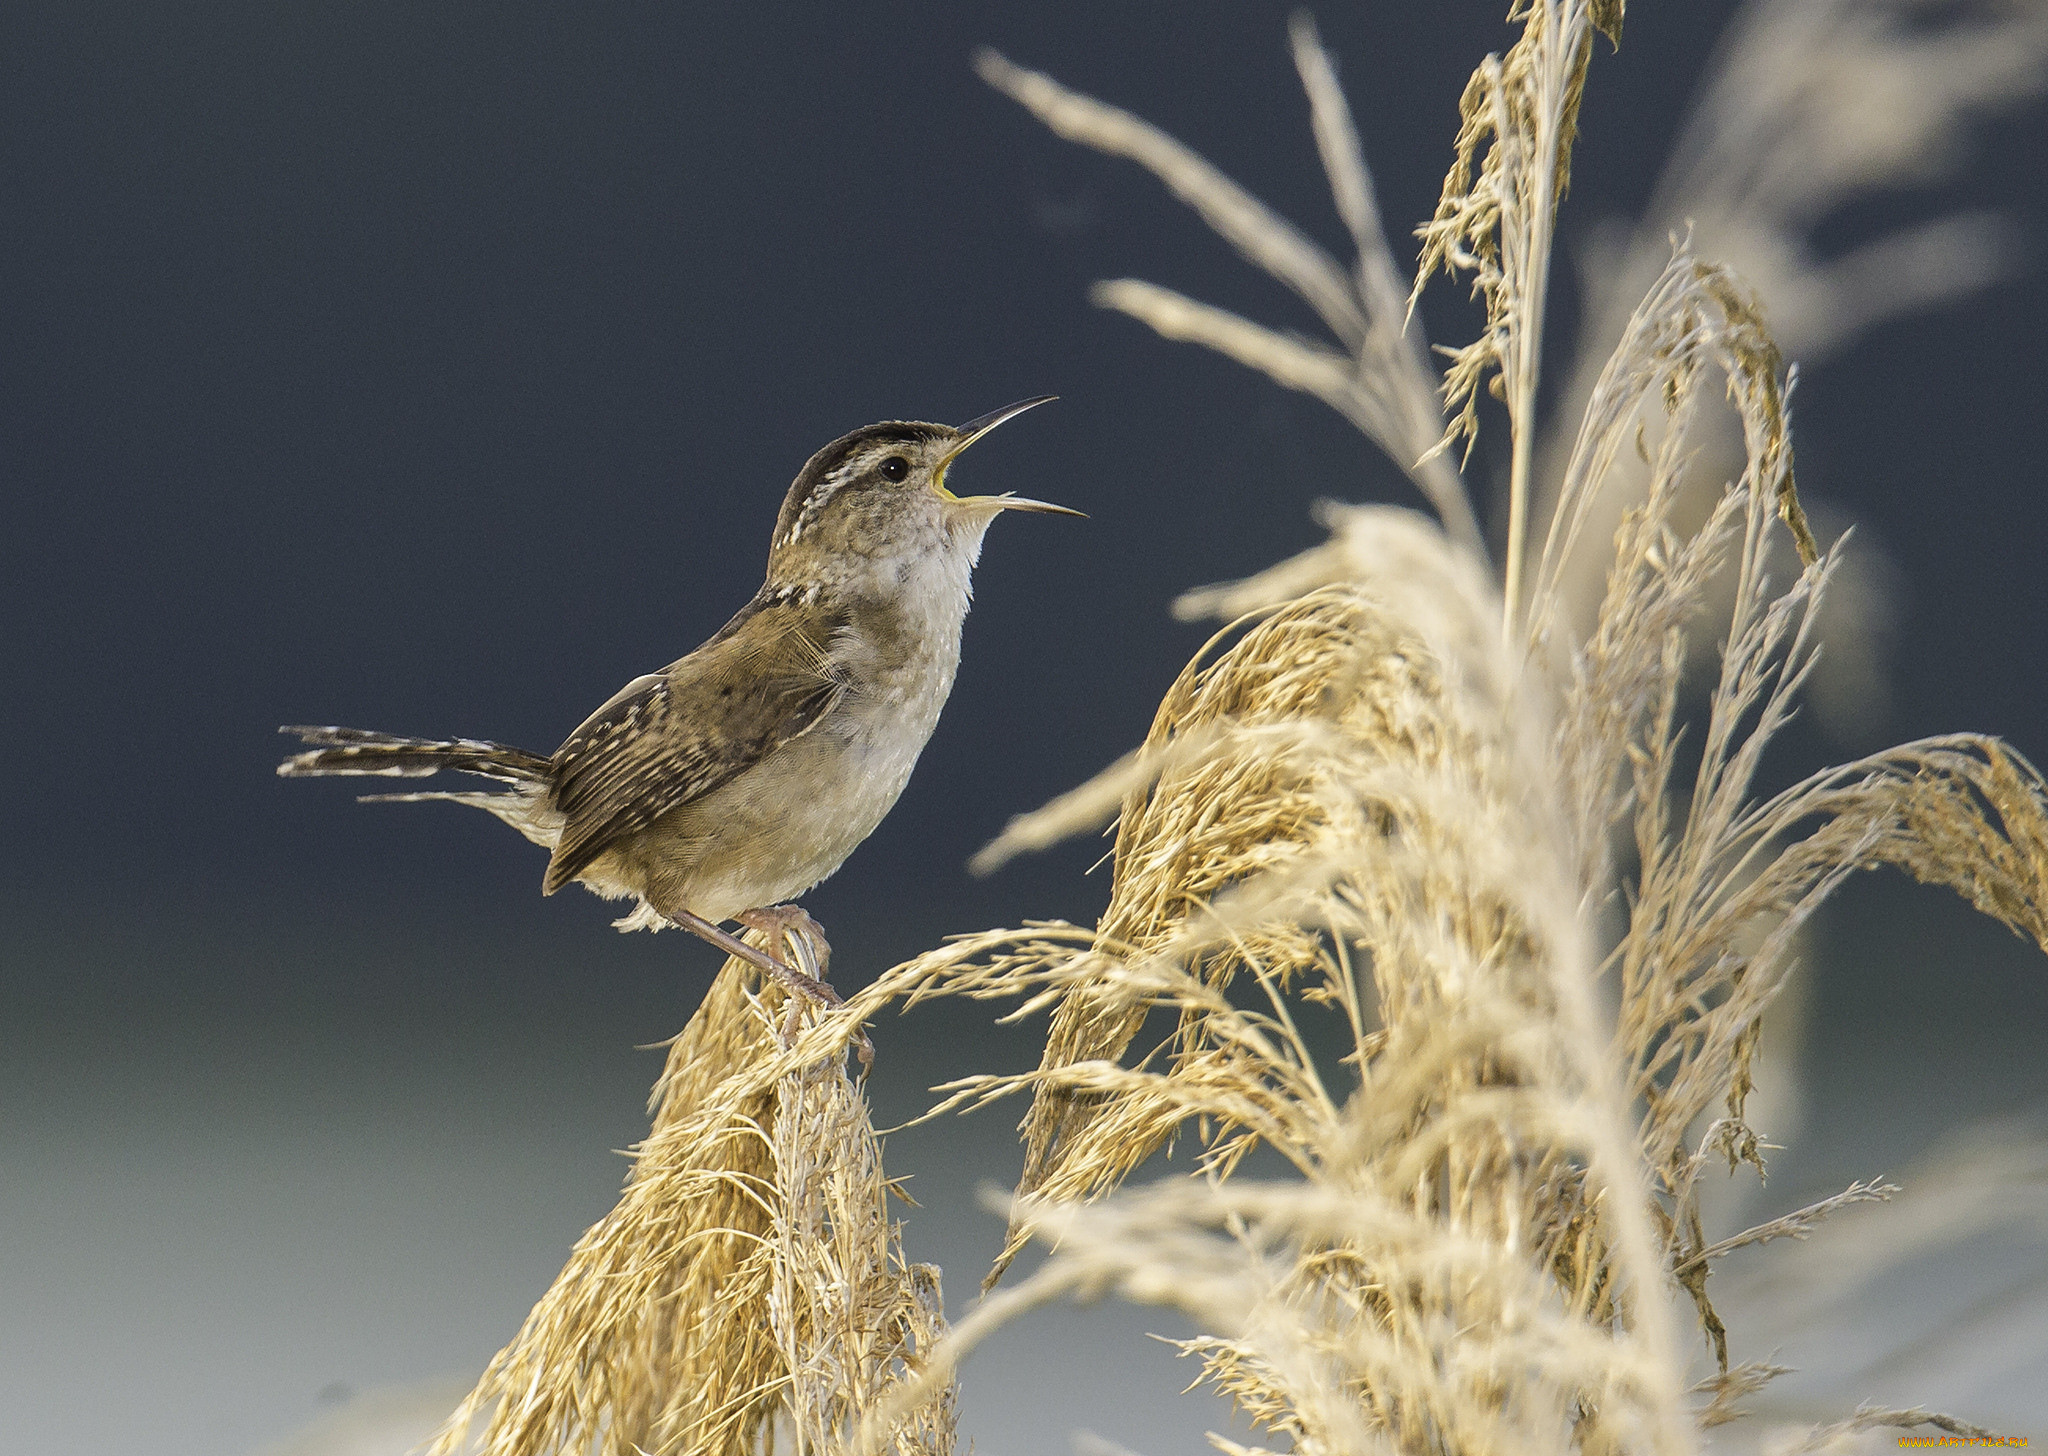 Пшеничная птица